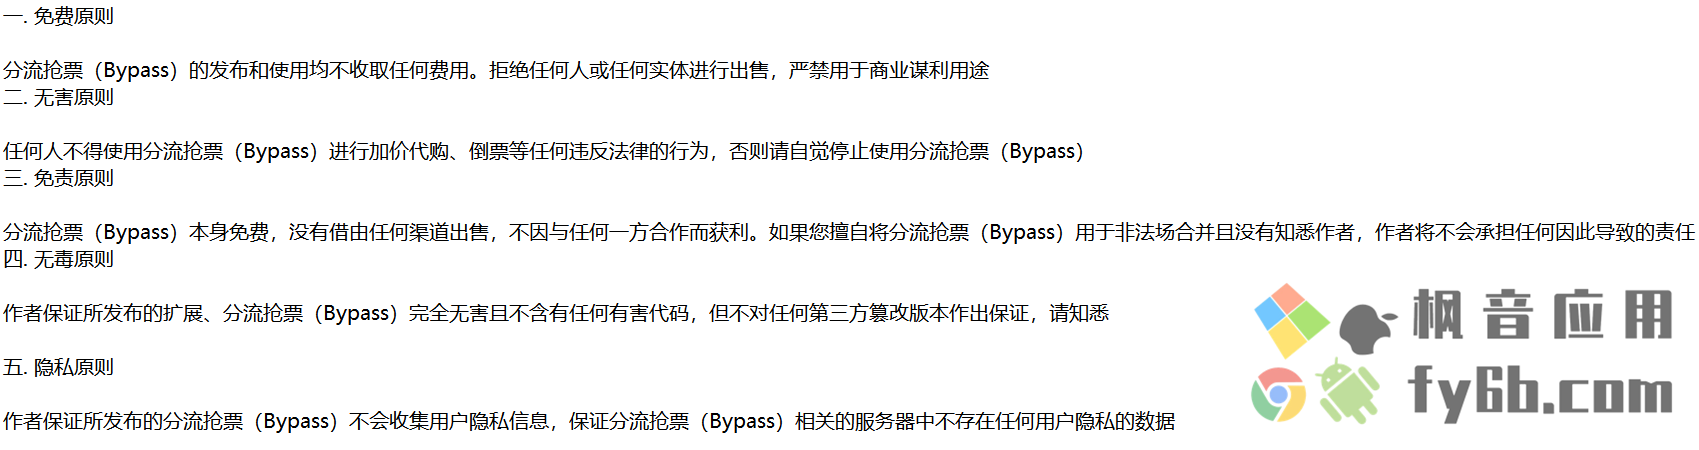 Windows Bypass分流抢票_1.14.75